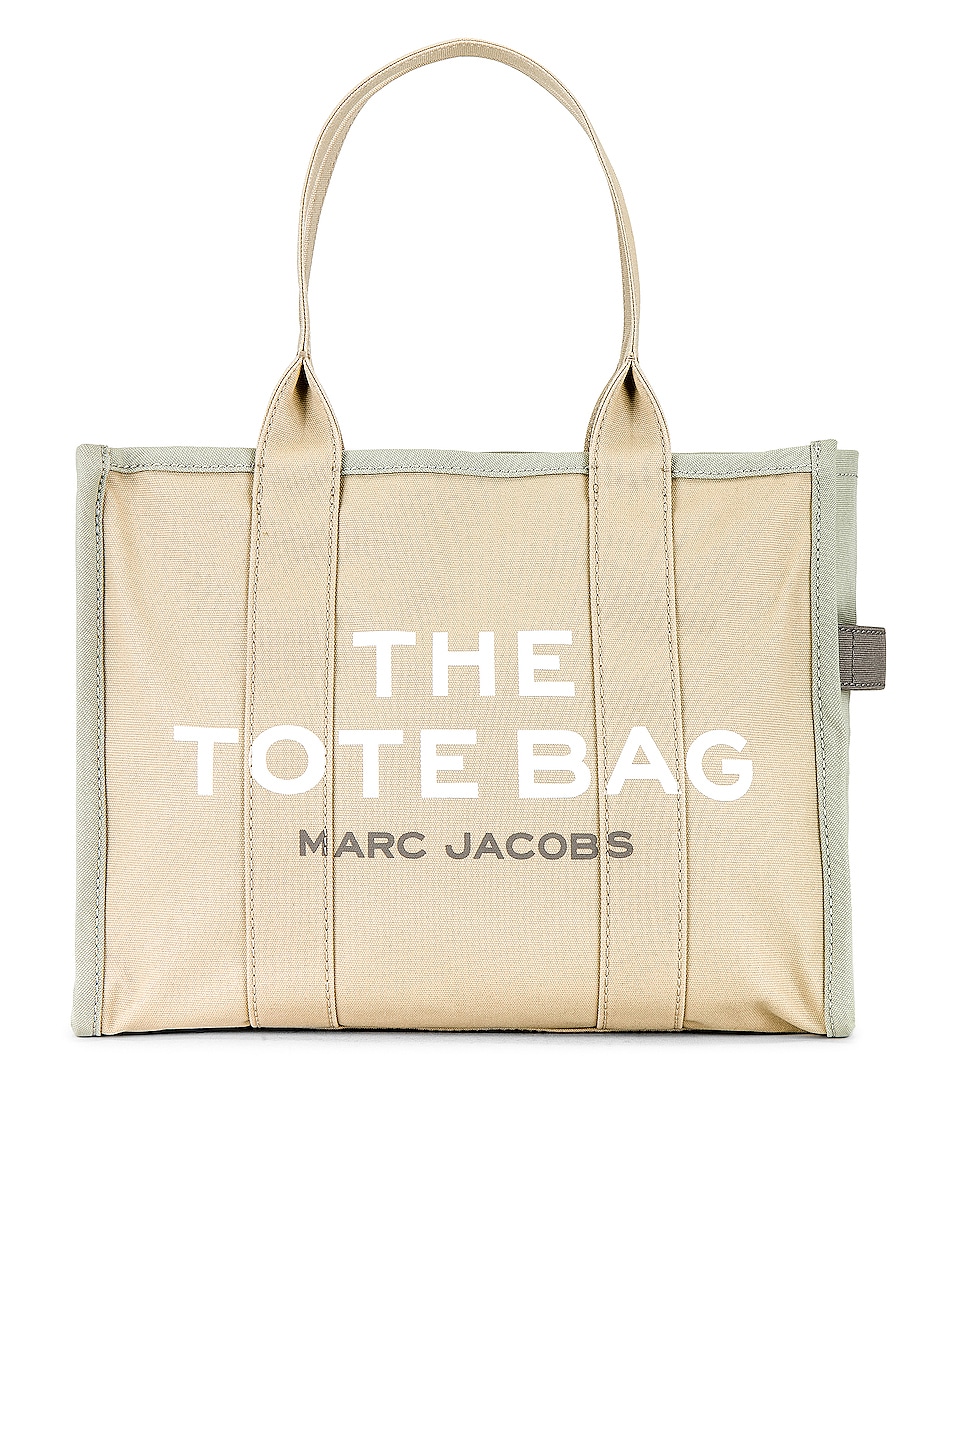 mandskab Abnorm Høre fra Marc Jacobs The Colorblock Large Tote Bag in Beige Multi | REVOLVE